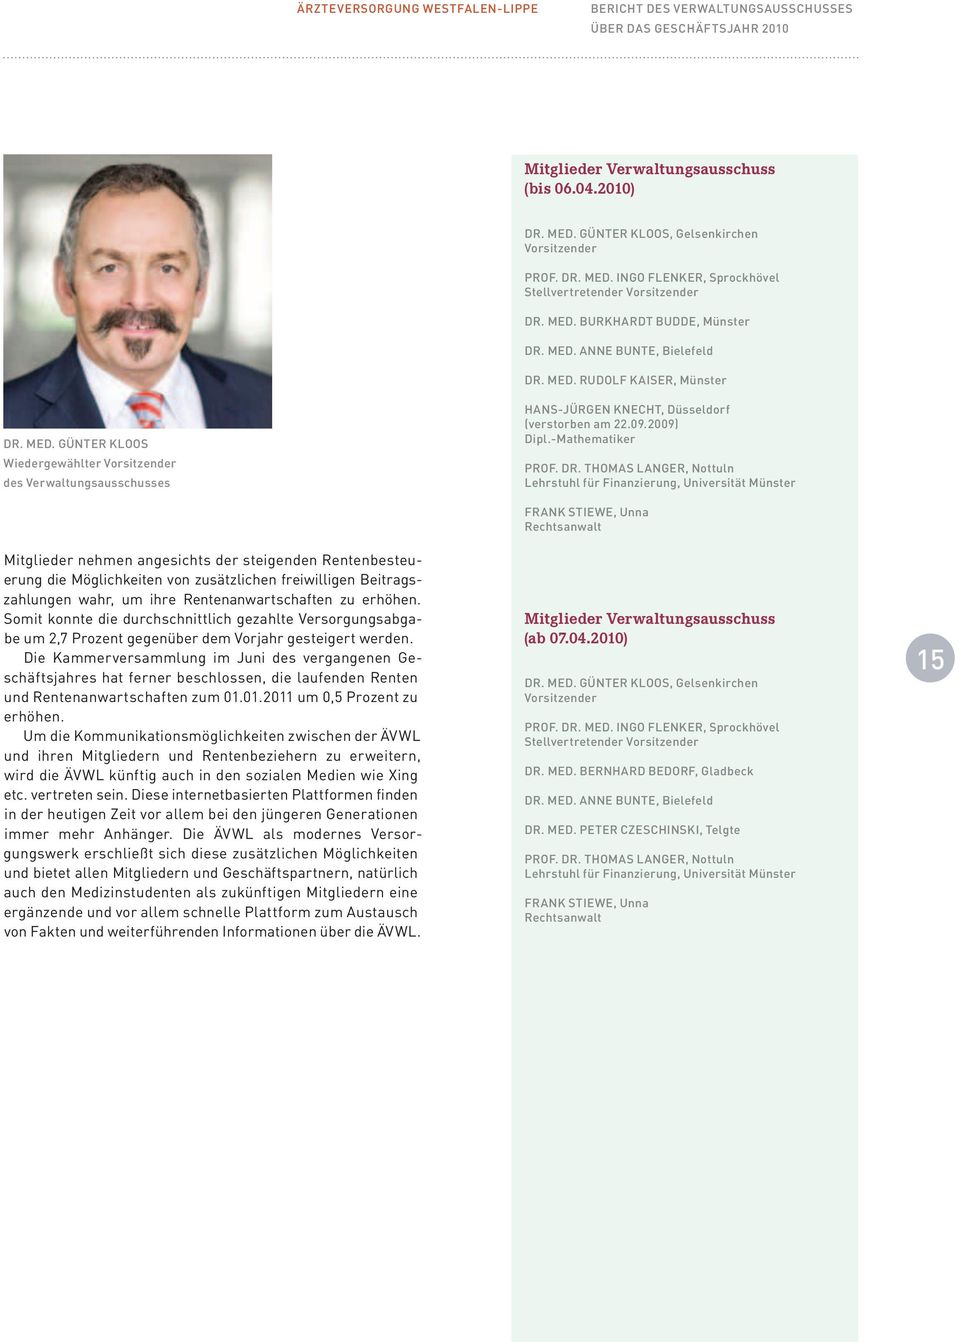 Günter Kloos Wiedergewählter Vorsitzender des Verwaltungsausschusses Hans-Jürgen Knecht, Düsseldorf (verstorben am 22.09.2009) Dipl.-Mathematiker Prof. Dr.